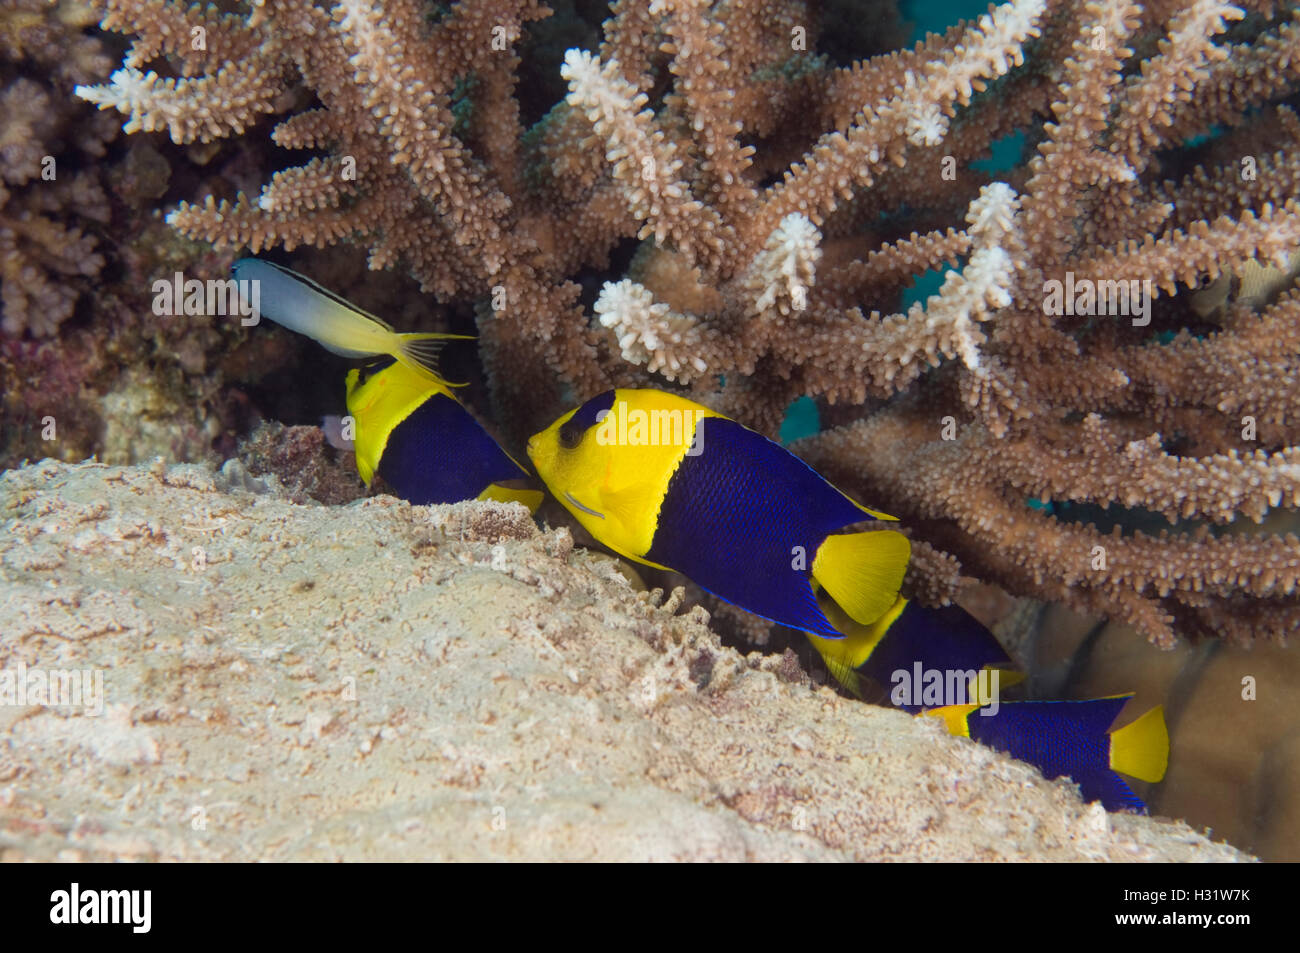 QZ74255-D. Peces Ángel (Centropyge bicolor bicolor), cuatro refugio en la base de ramas de coral duro. Australia, tropical Indo-Pac Foto de stock